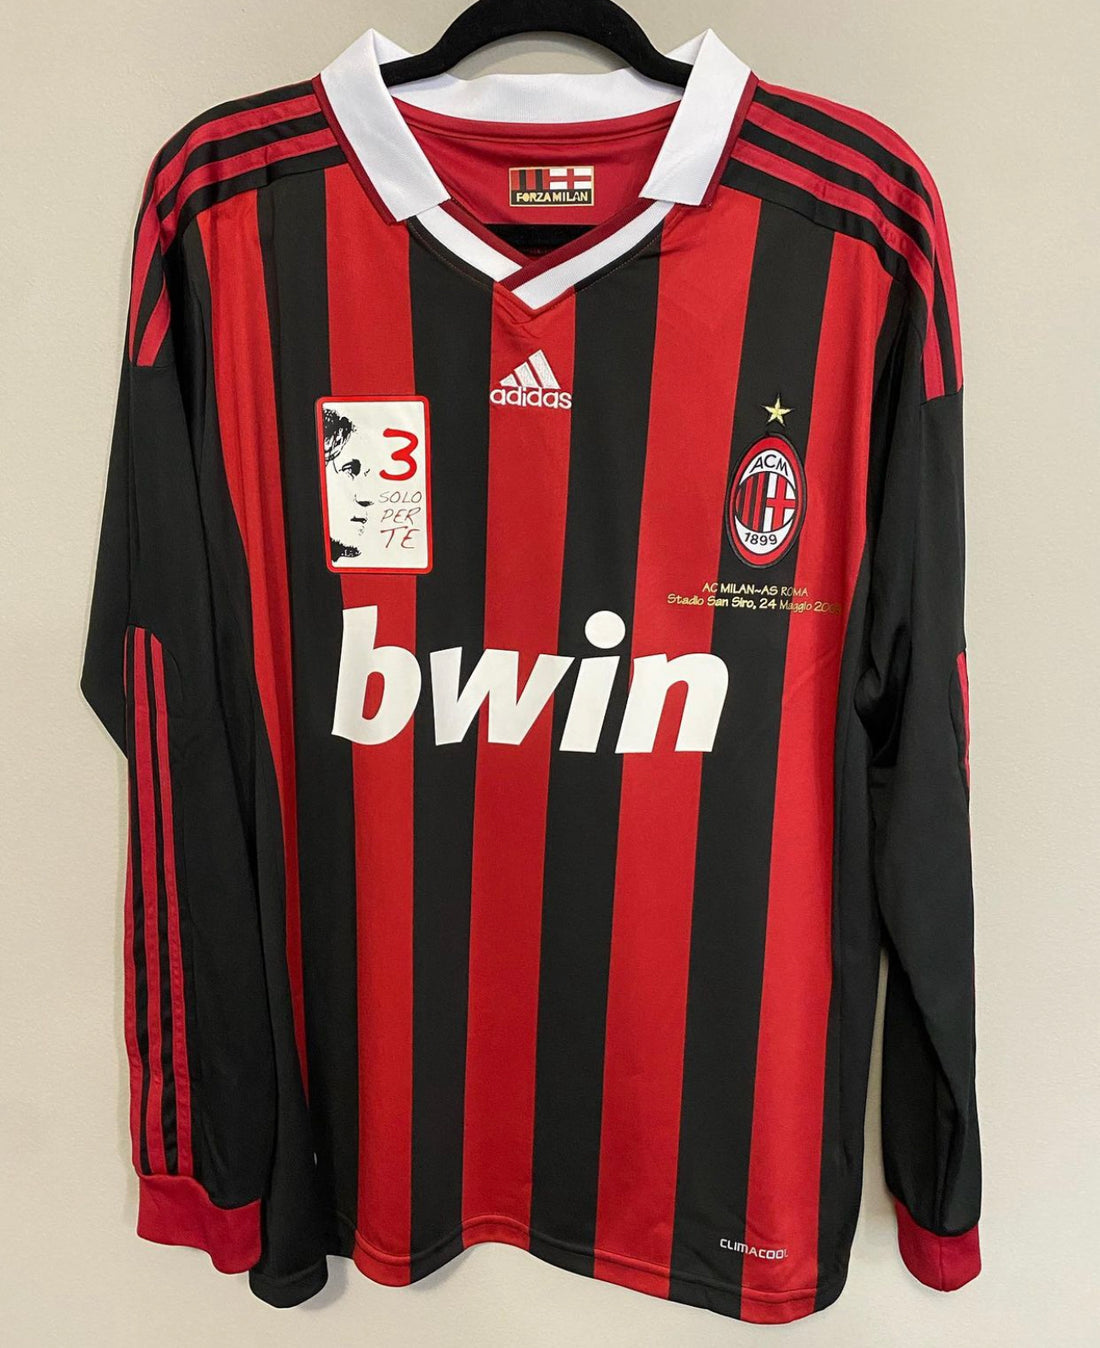 AC Milan 08/09 Long Sleeve Jersey –